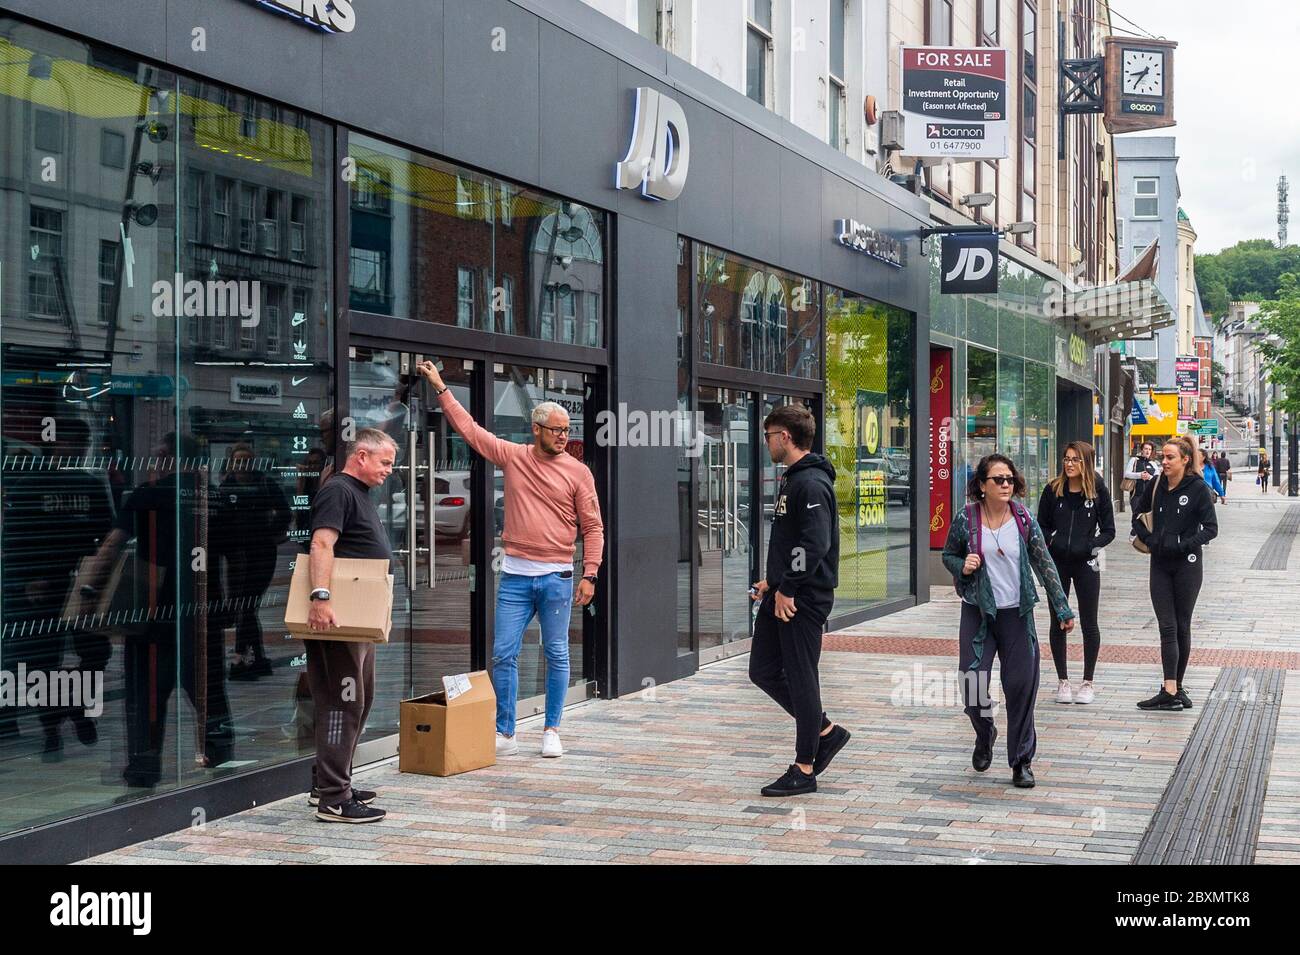 Cork, Irlande. 8 juin 2020. De nombreux magasins en Irlande rouvrent aujourd'hui après une fermeture de 3 mois en raison de la pandémie de Covid-19. Le personnel se prépare à entrer dans JD Sports à Patrick Street, Cork. Crédit : AG News/Alay Live News Banque D'Images